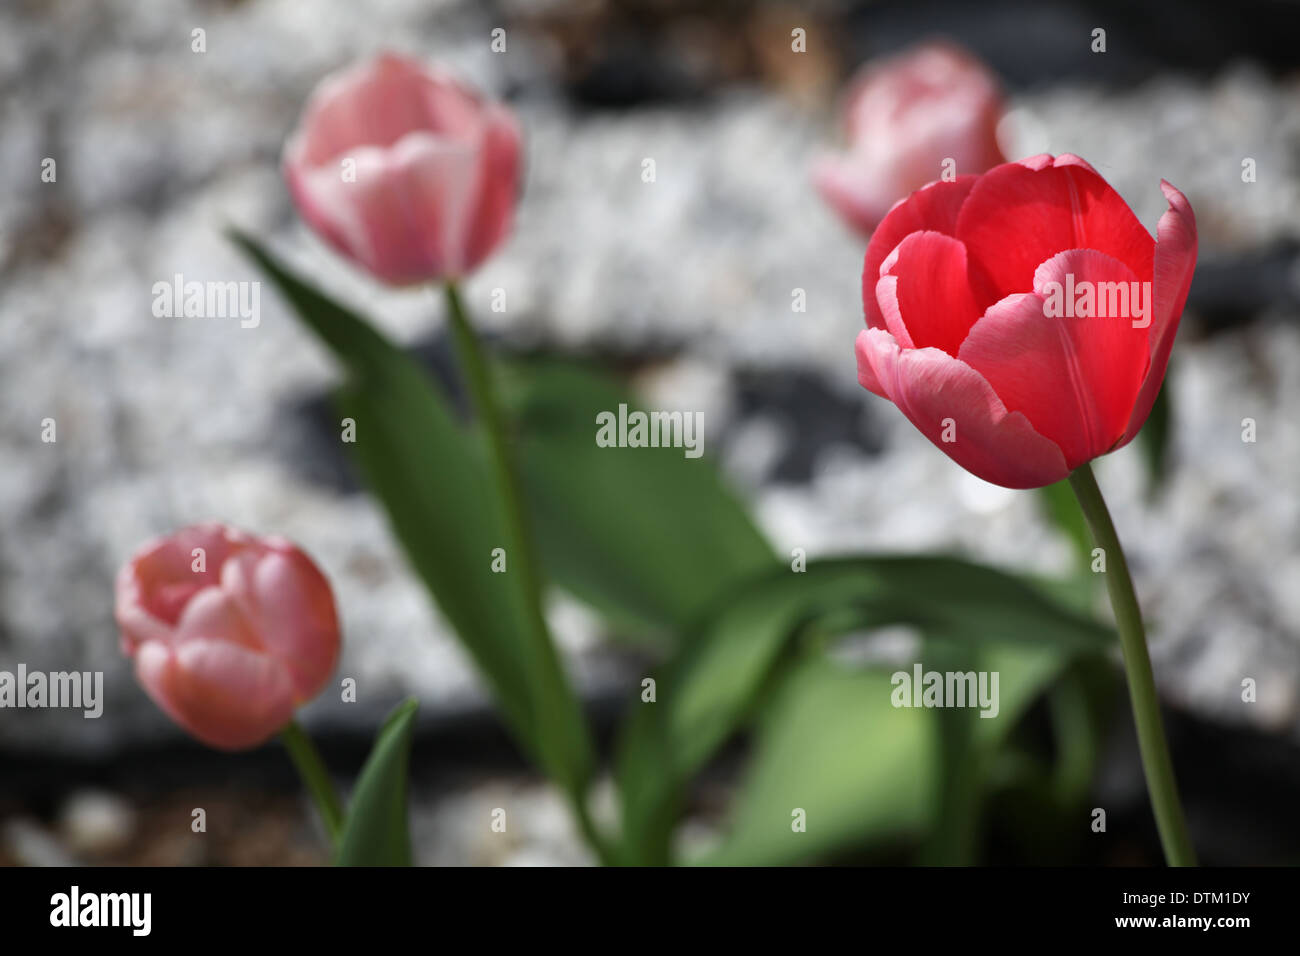 Rote Tulpe In Focus, rosa Tulpen im Hintergrund, White Rock/Kiesbett Stockfoto